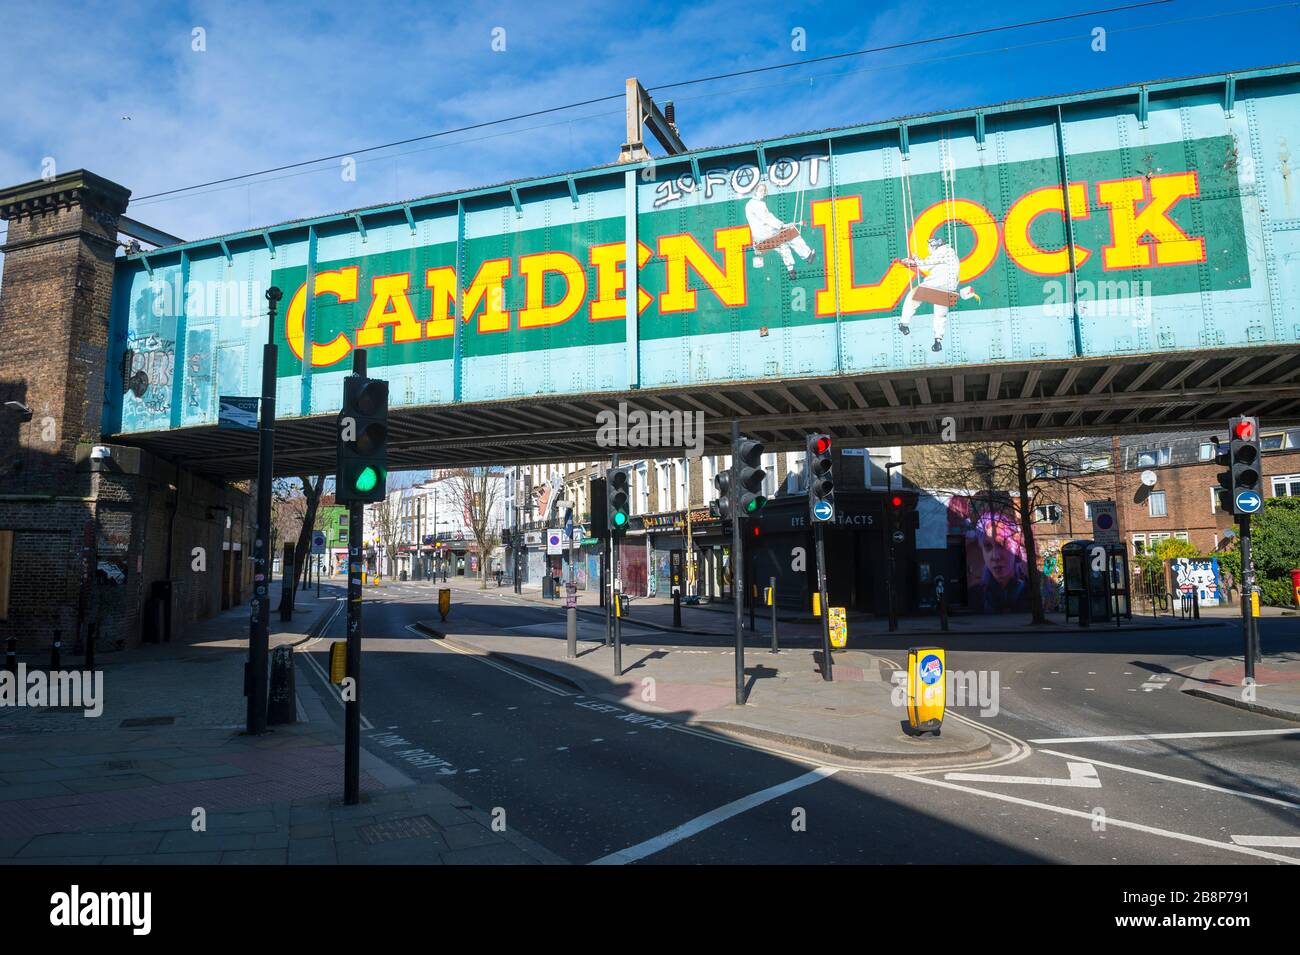 LONDRA - 22 MARZO, 2020: Le strade solitamente trafficate intorno al famoso mercato di Camden sono ora deserte mentre la città soffre dal blocco di Coronavirus. Foto Stock